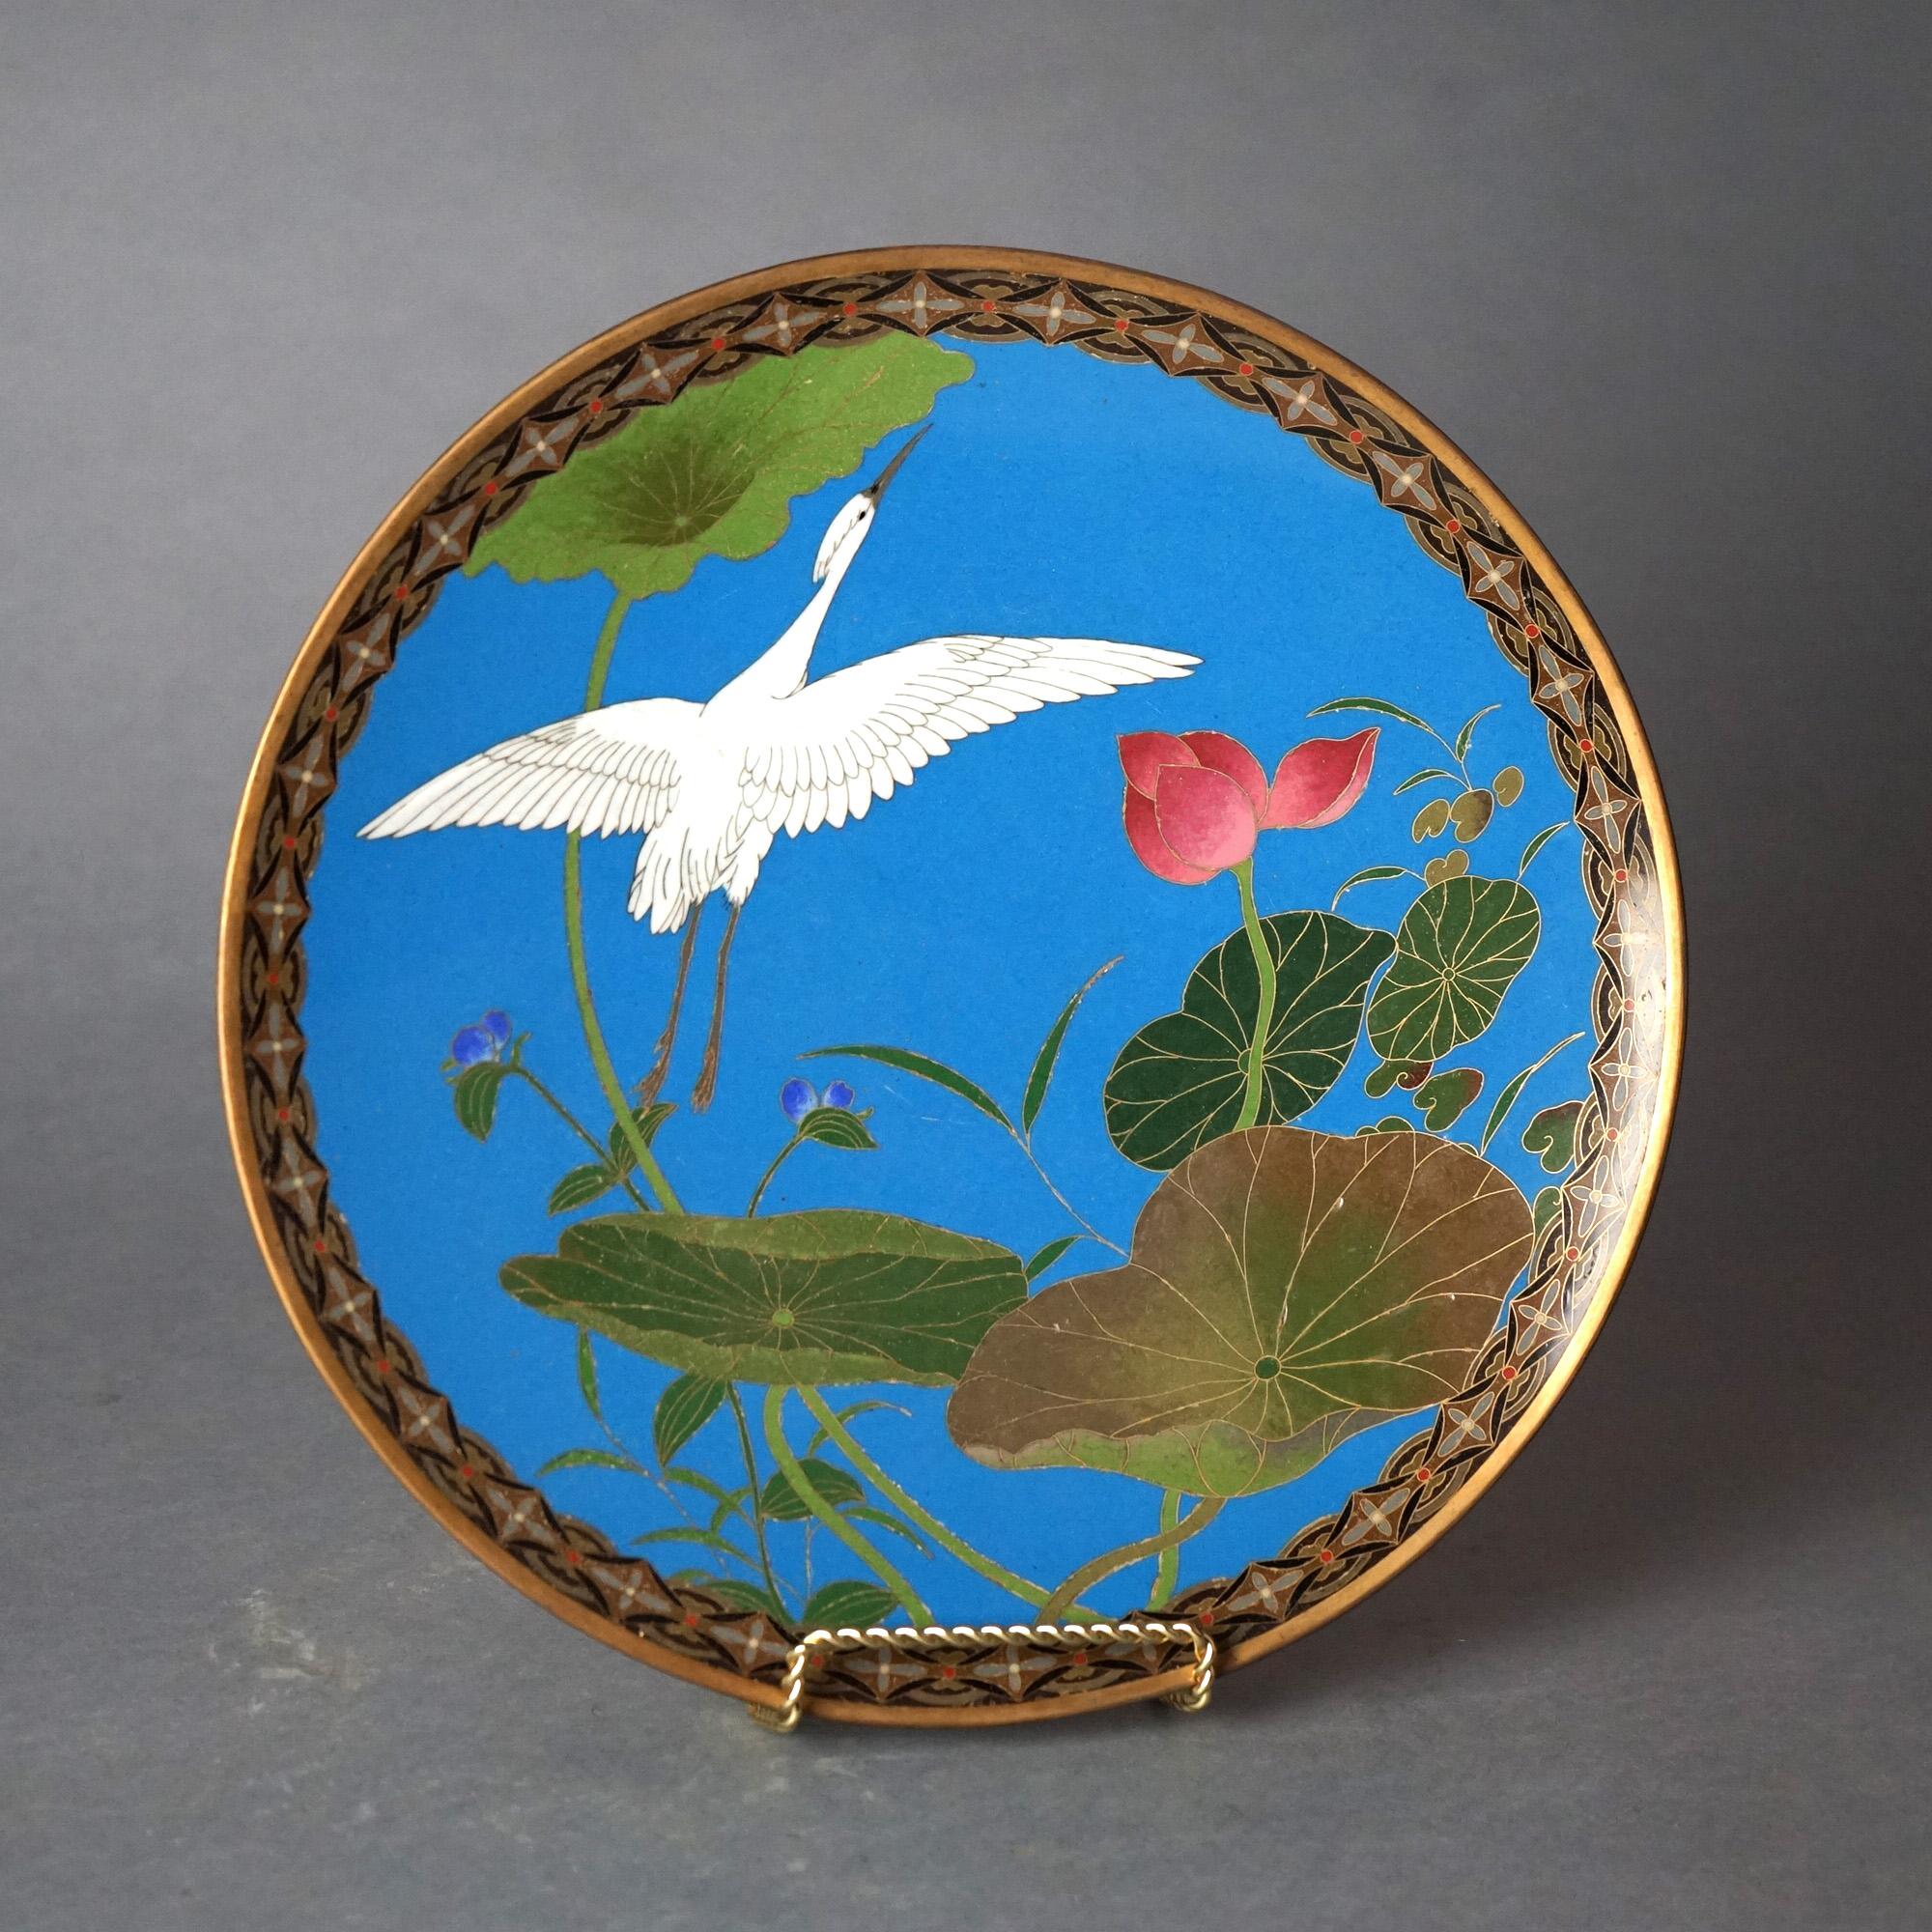 Antike japanische Meiji Cloisonné emaillierte Platte mit Teich, Seerose & Reiher C1920

Maße - 9,5 